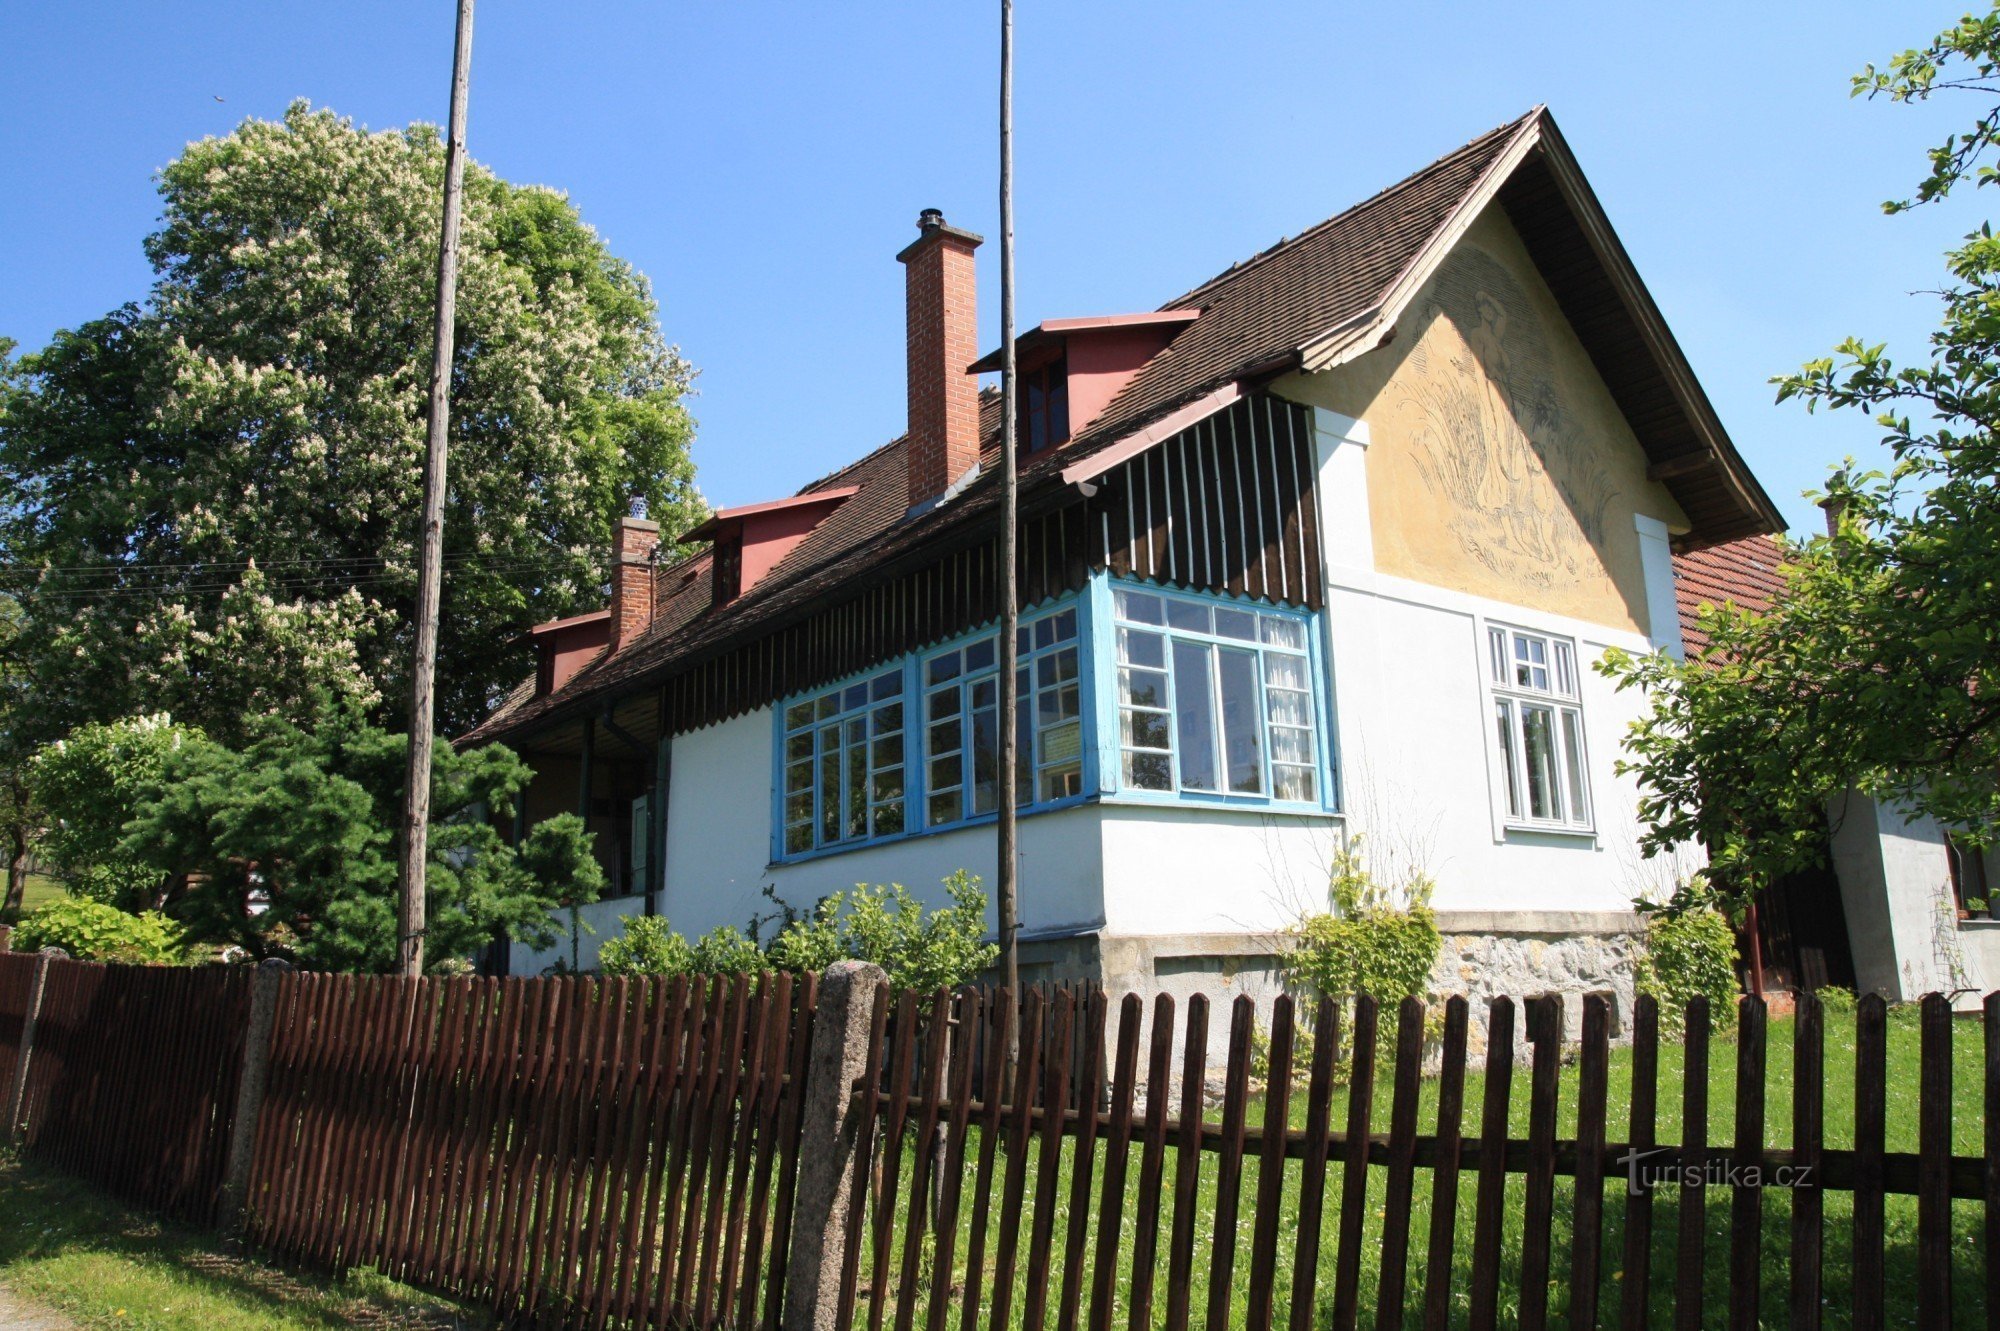 Kozlov - Pecháčkův-Vejrychův estate, spring 2011